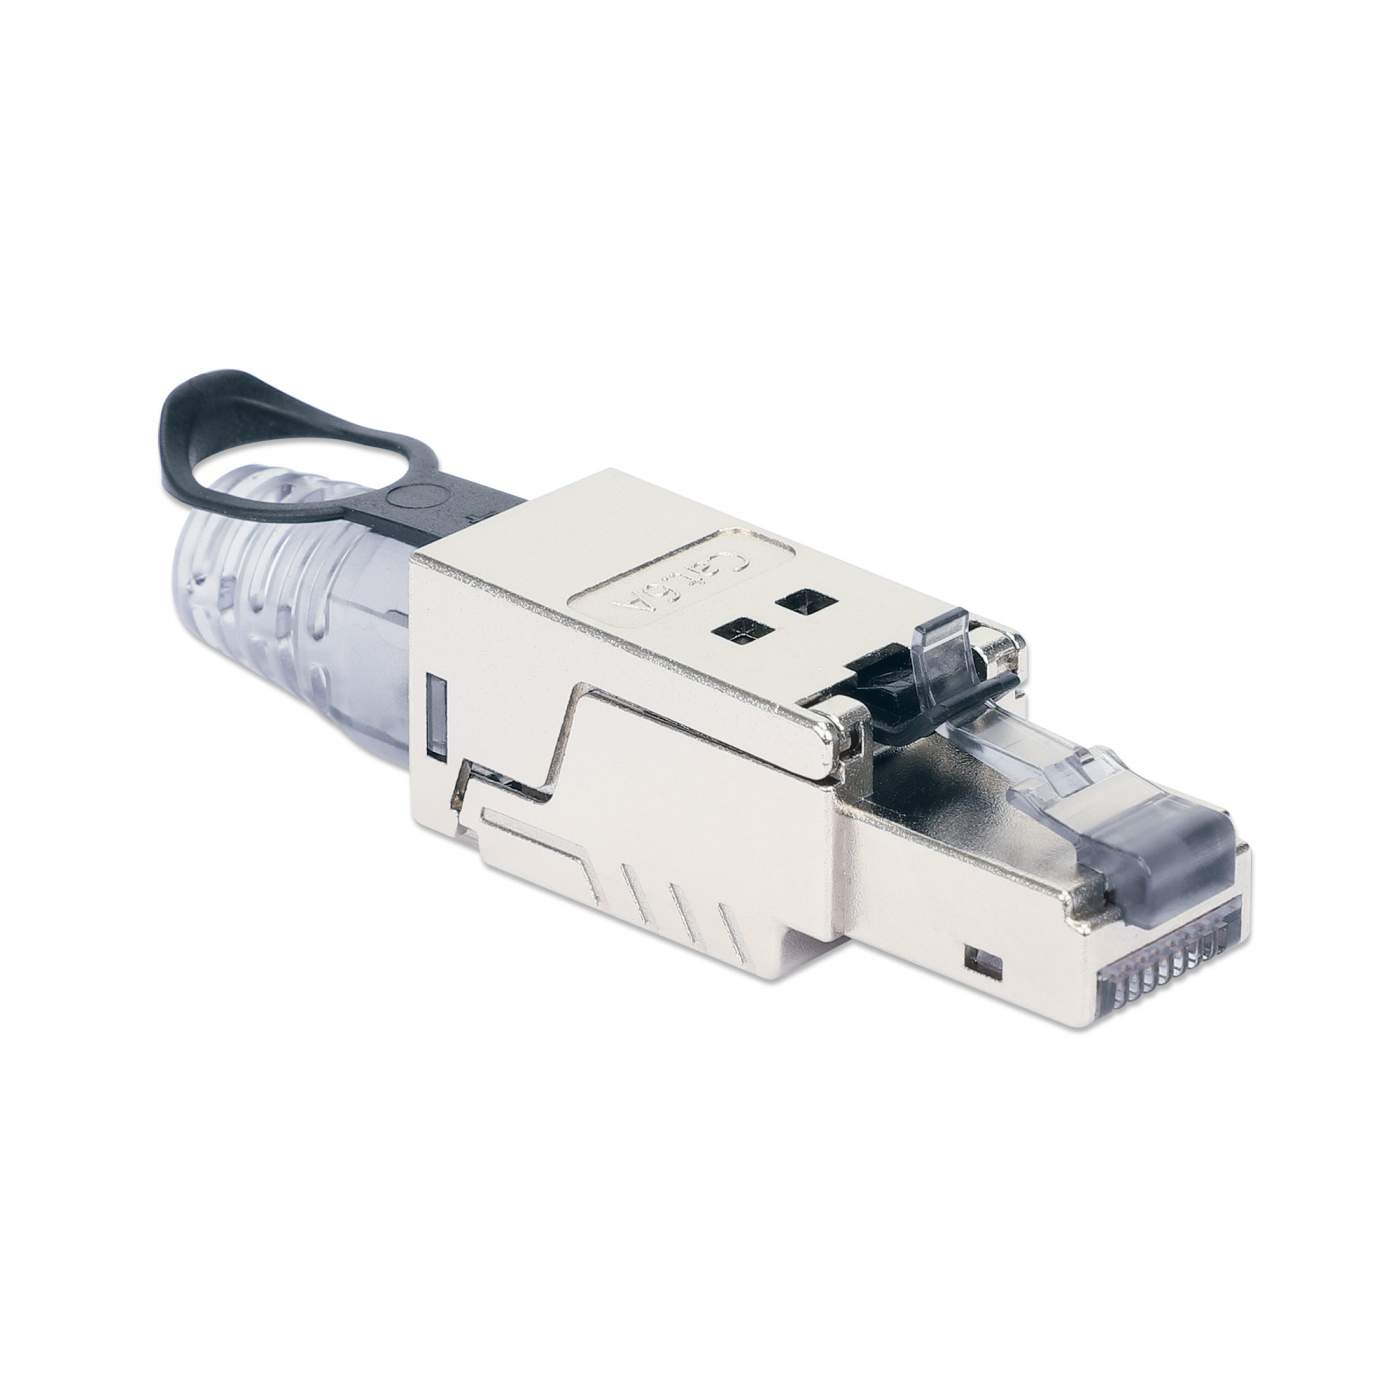 Connecteur RJ45 Cat6a mâle pour câble Ethernet grosse section